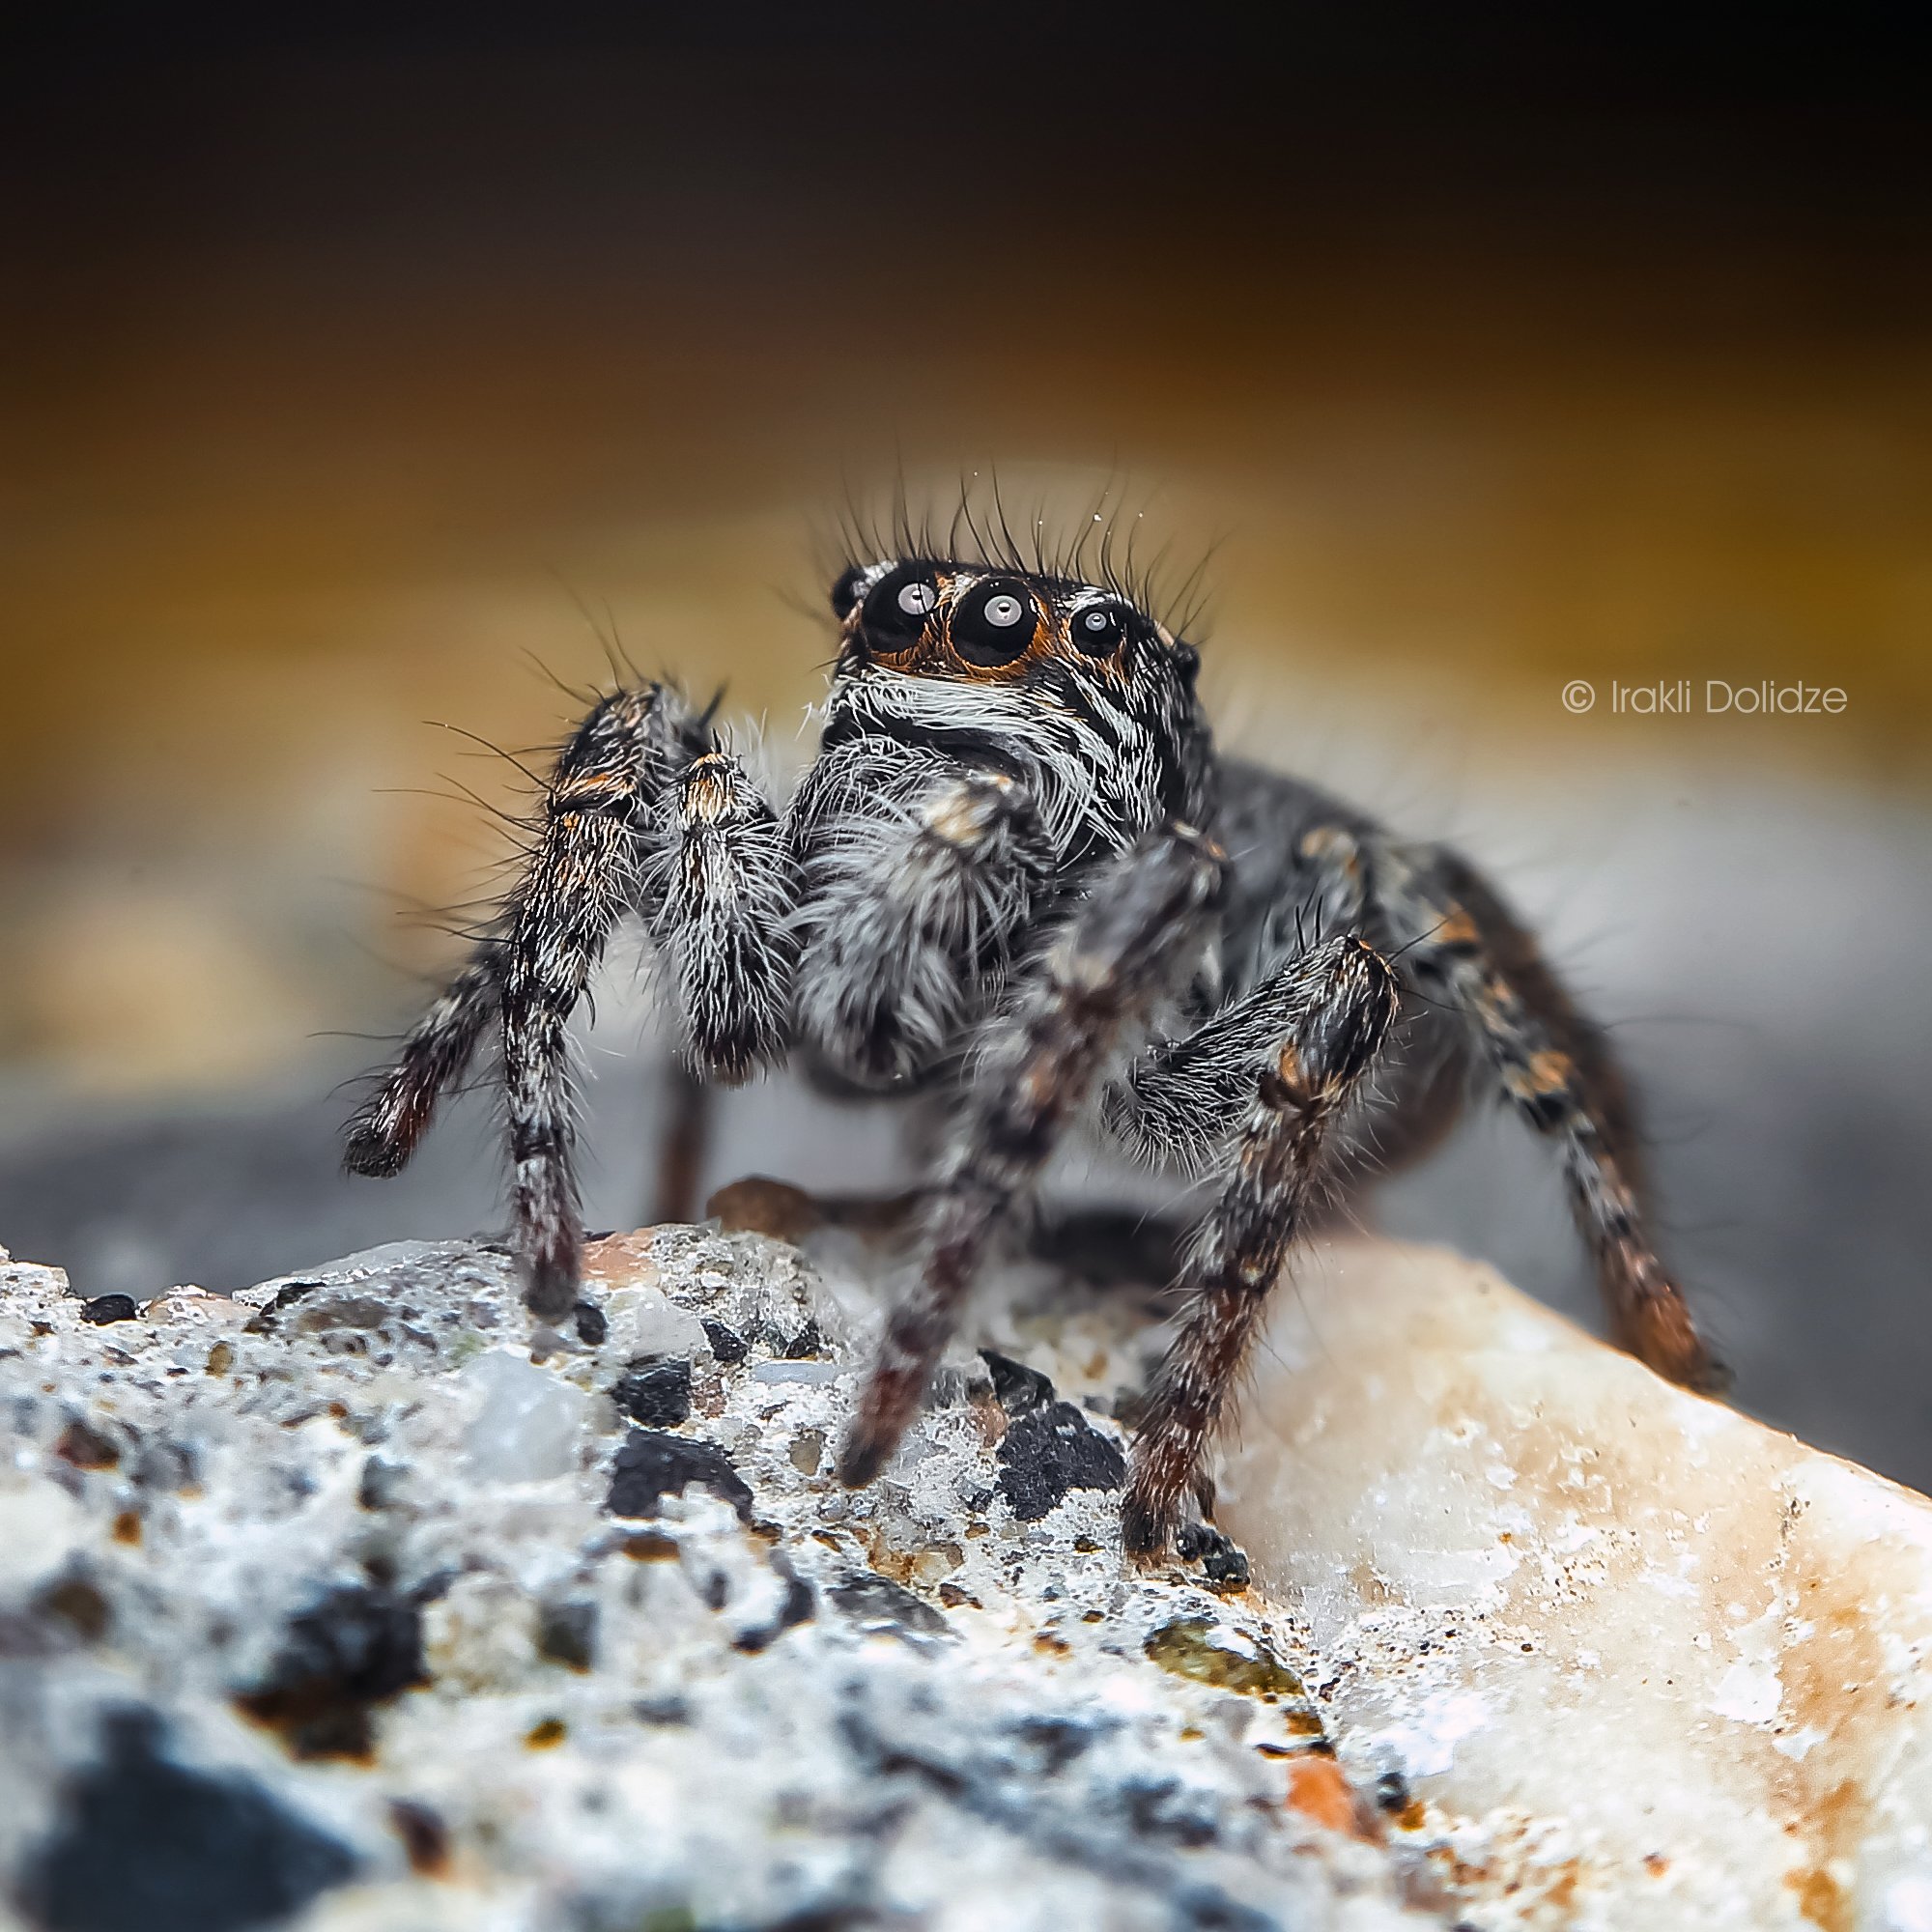 spider, philaeus chrysops, female, macro, nature, close up, canon, ირაკლი დოლიძე